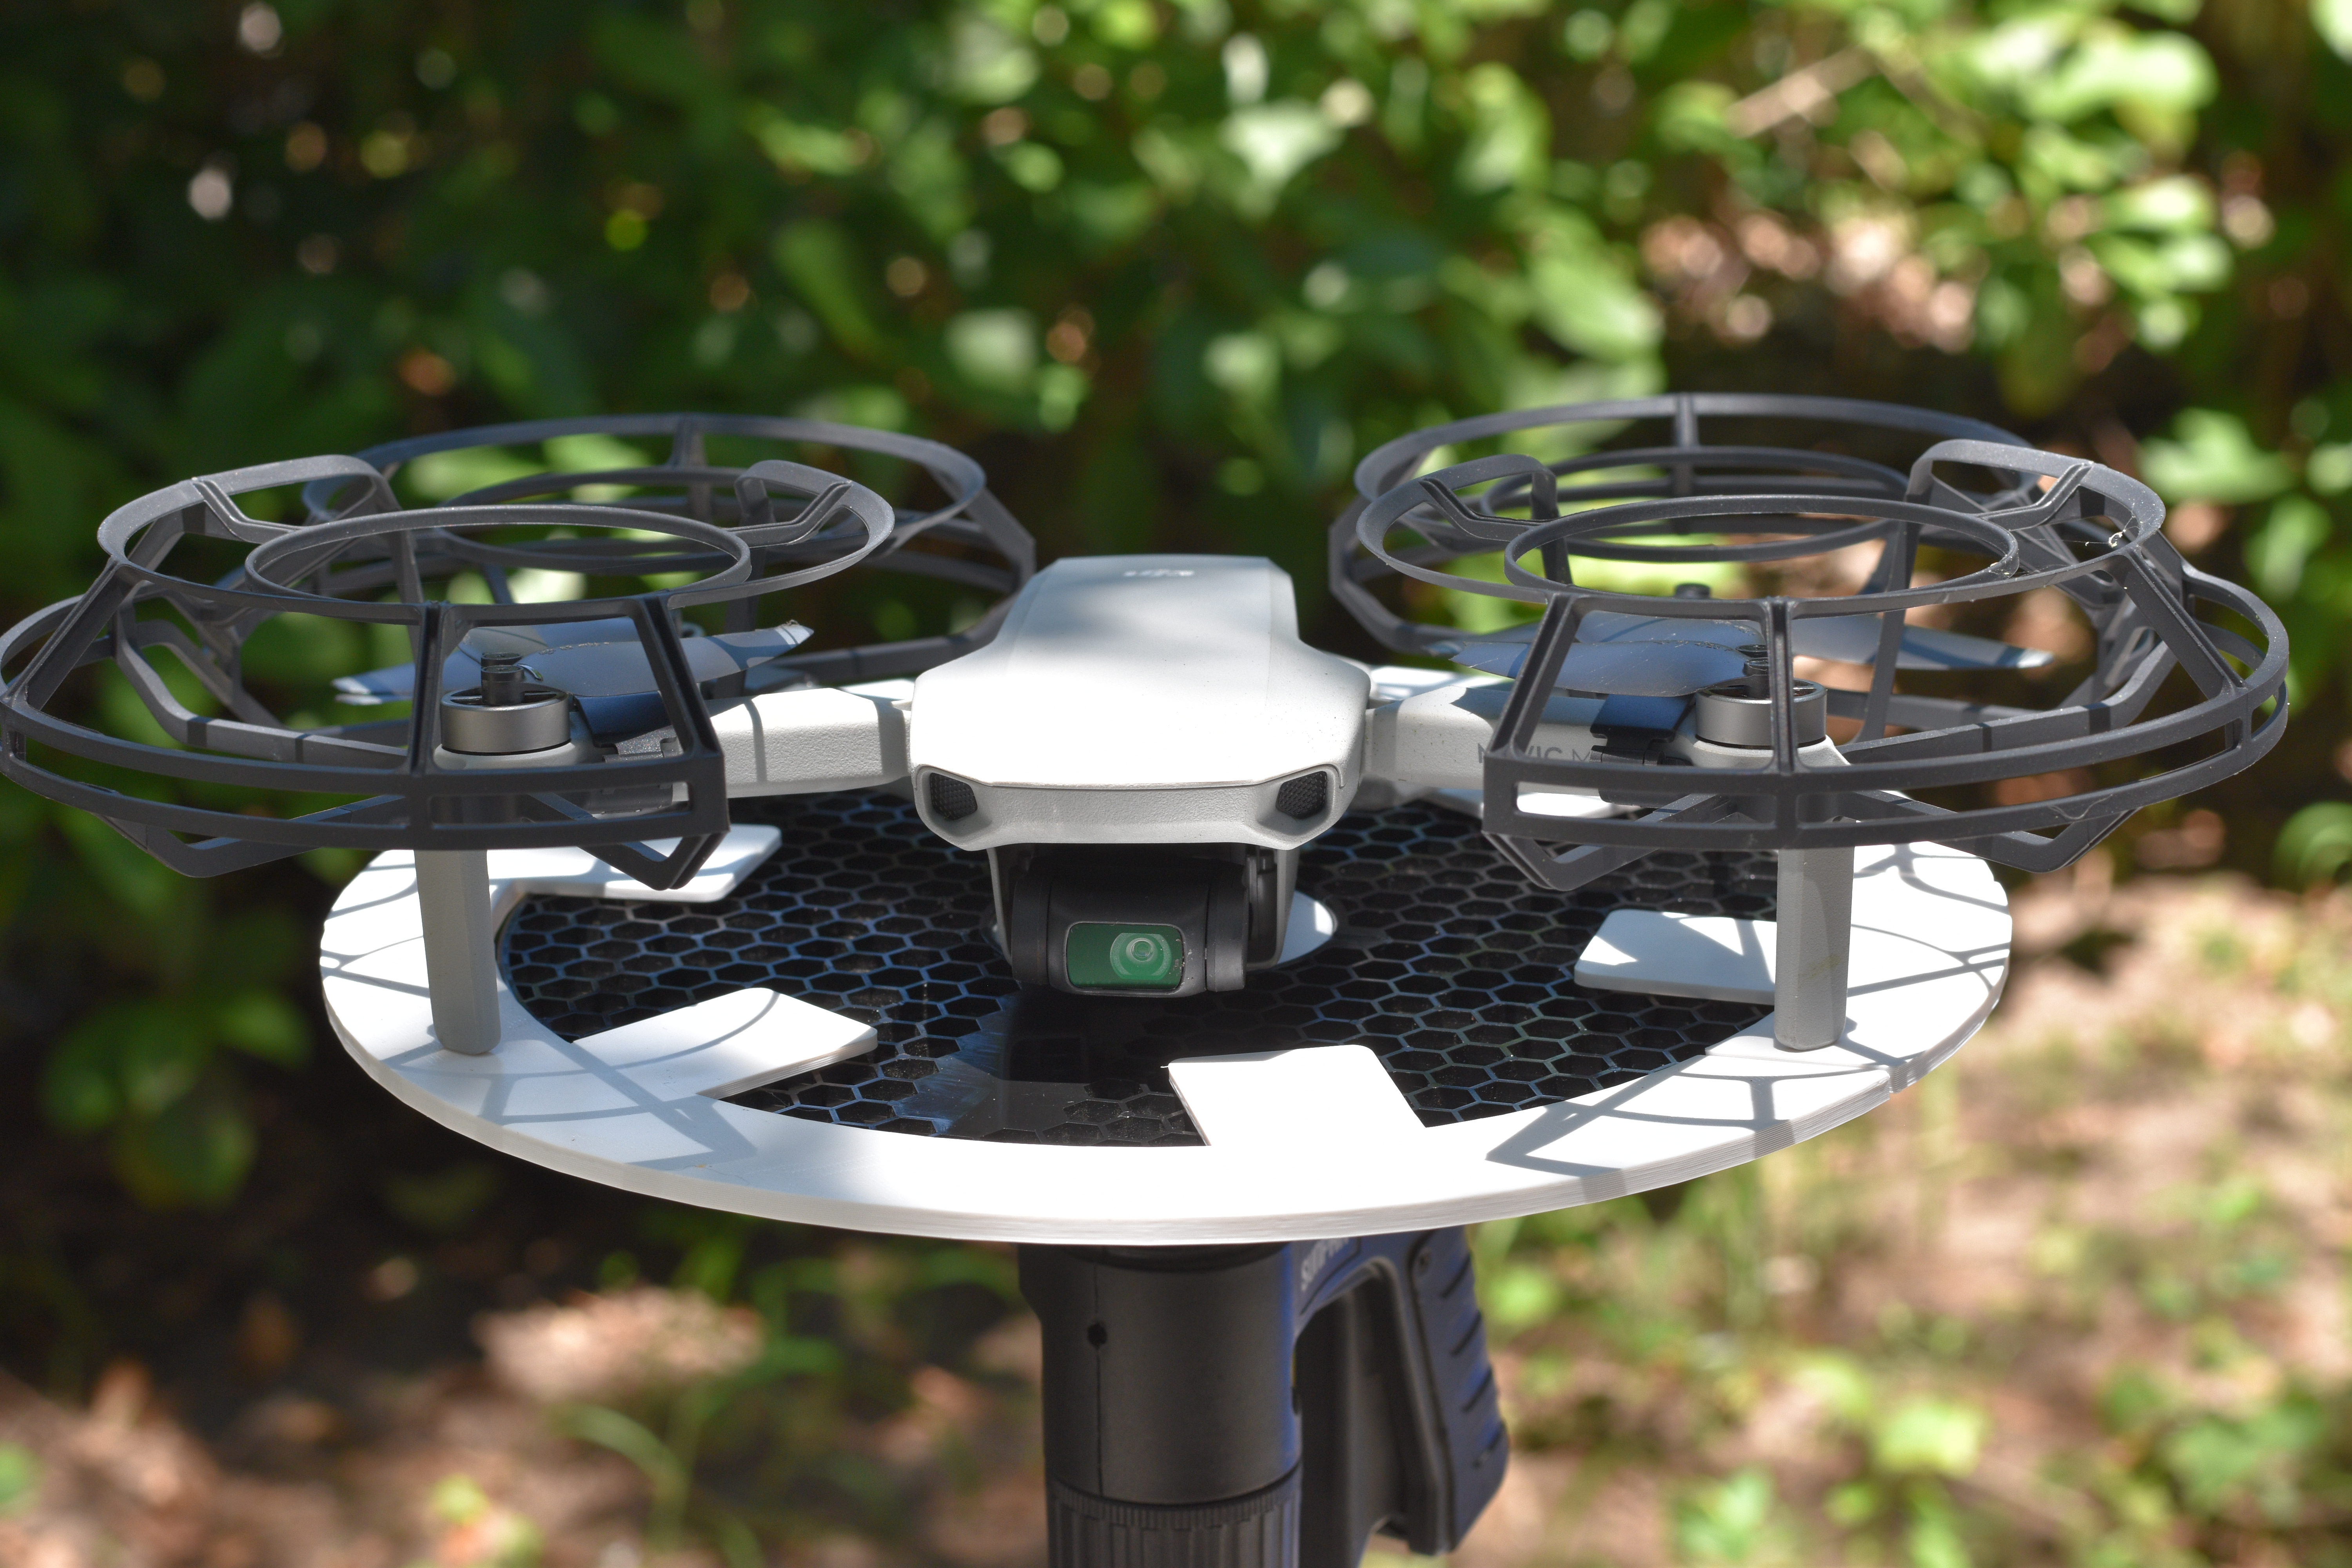 Drone Tripod Landing Pad